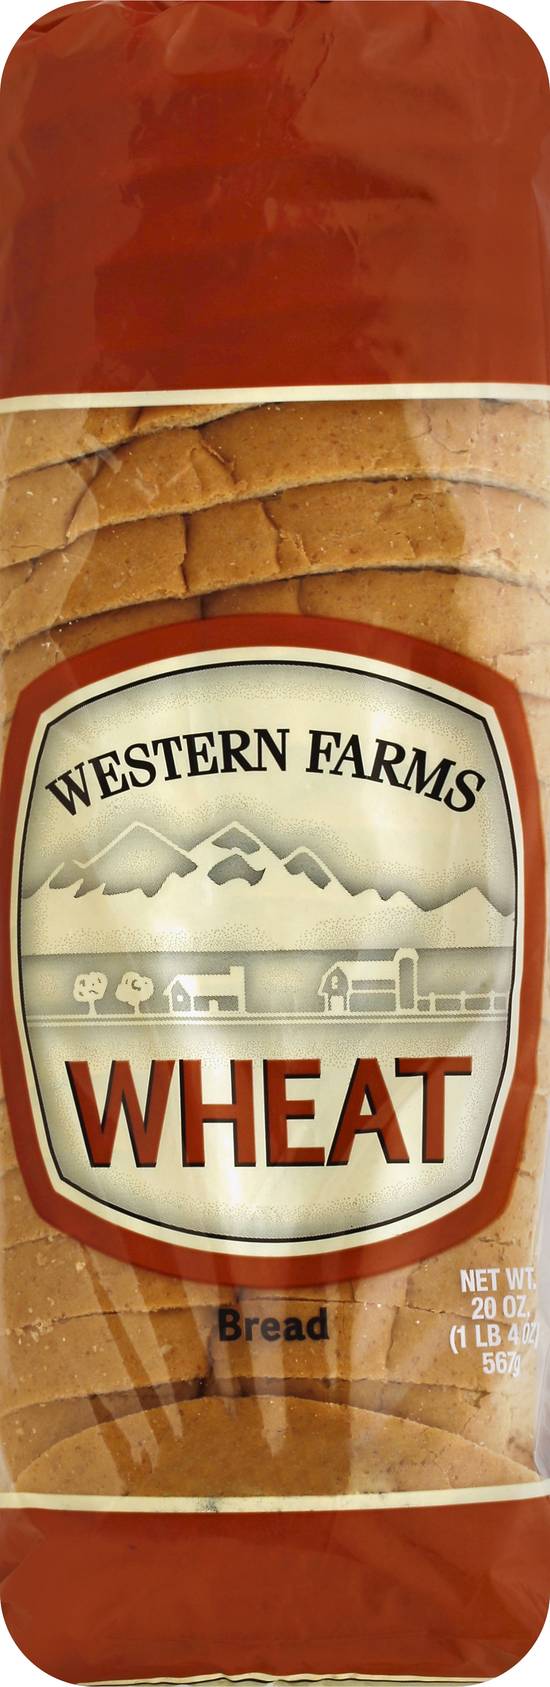 Western Farms Wheat Bread (20 oz)